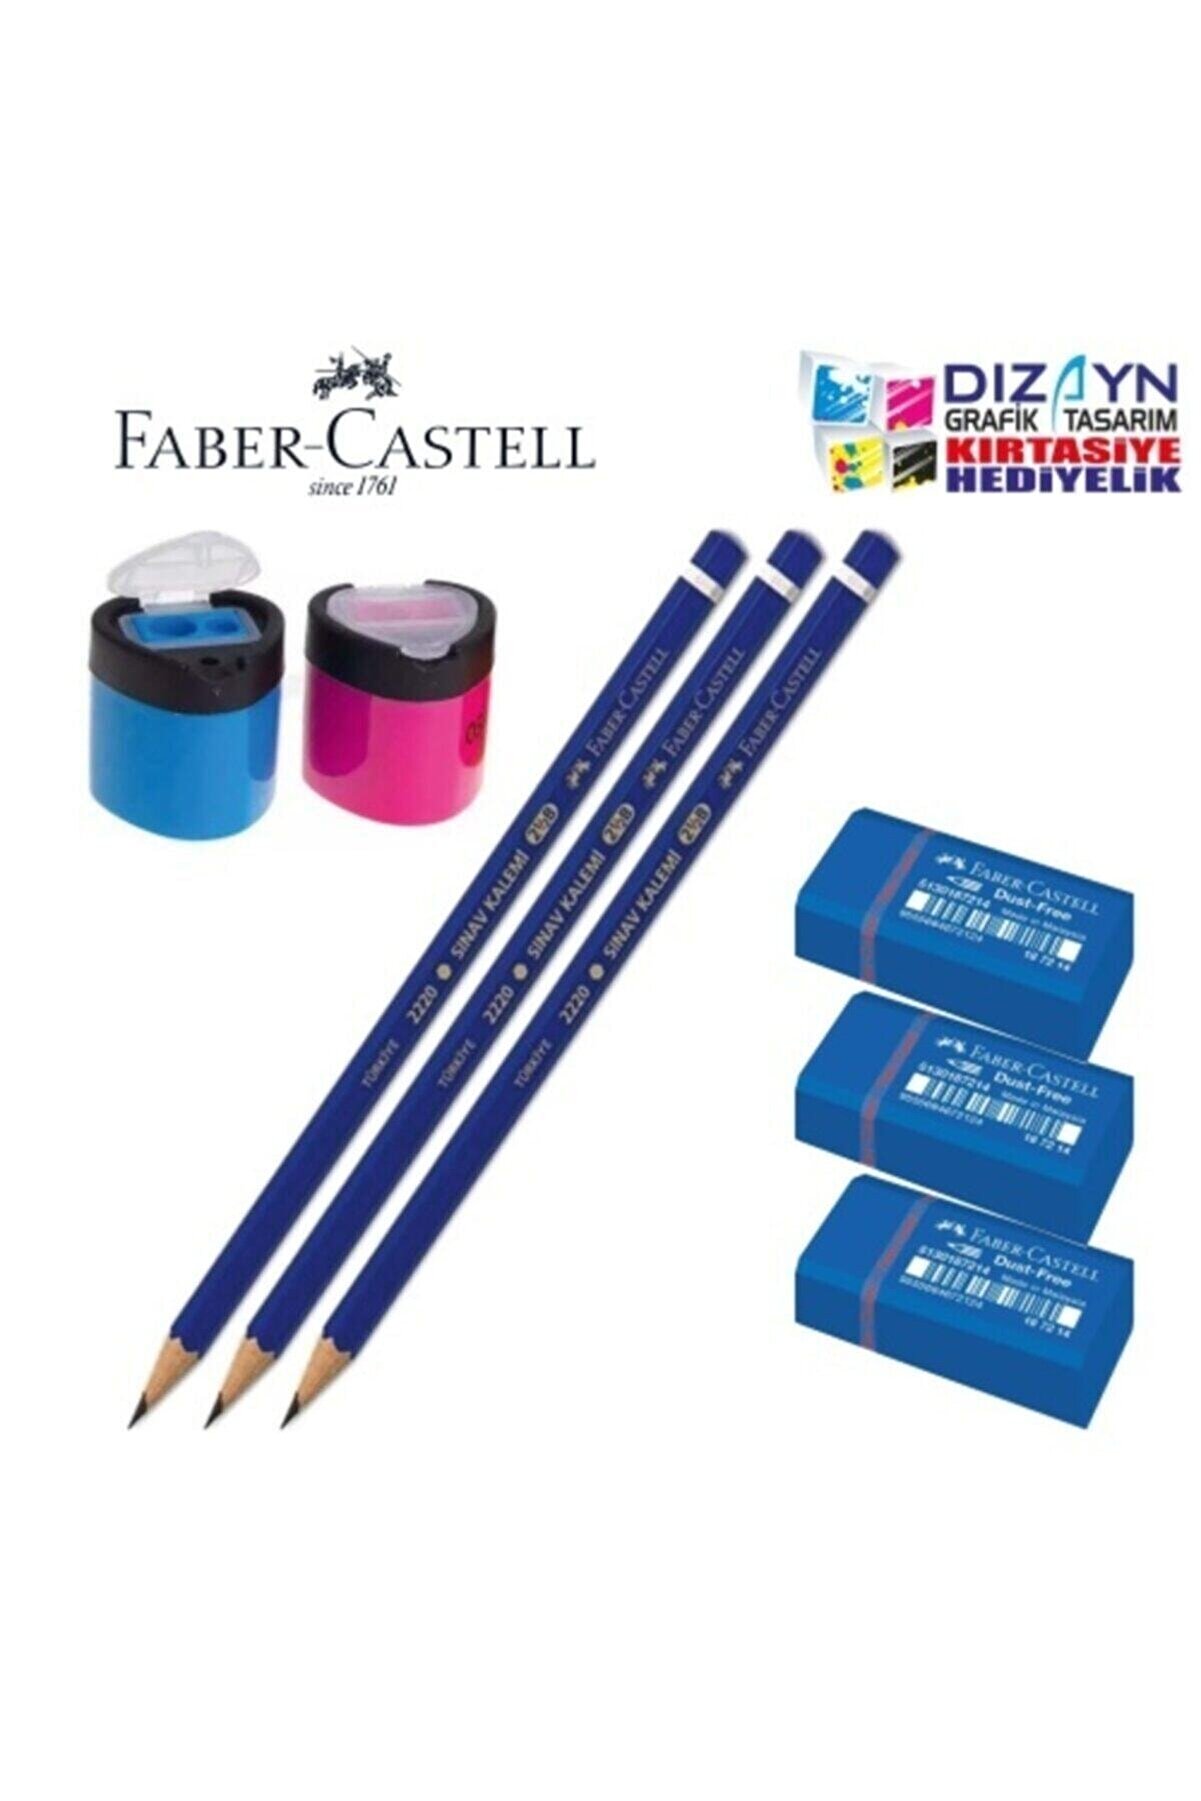 Faber Castell 3sınav Kalemi+3sınav Silgisi+2kalemtraş Kırmızı Mavi